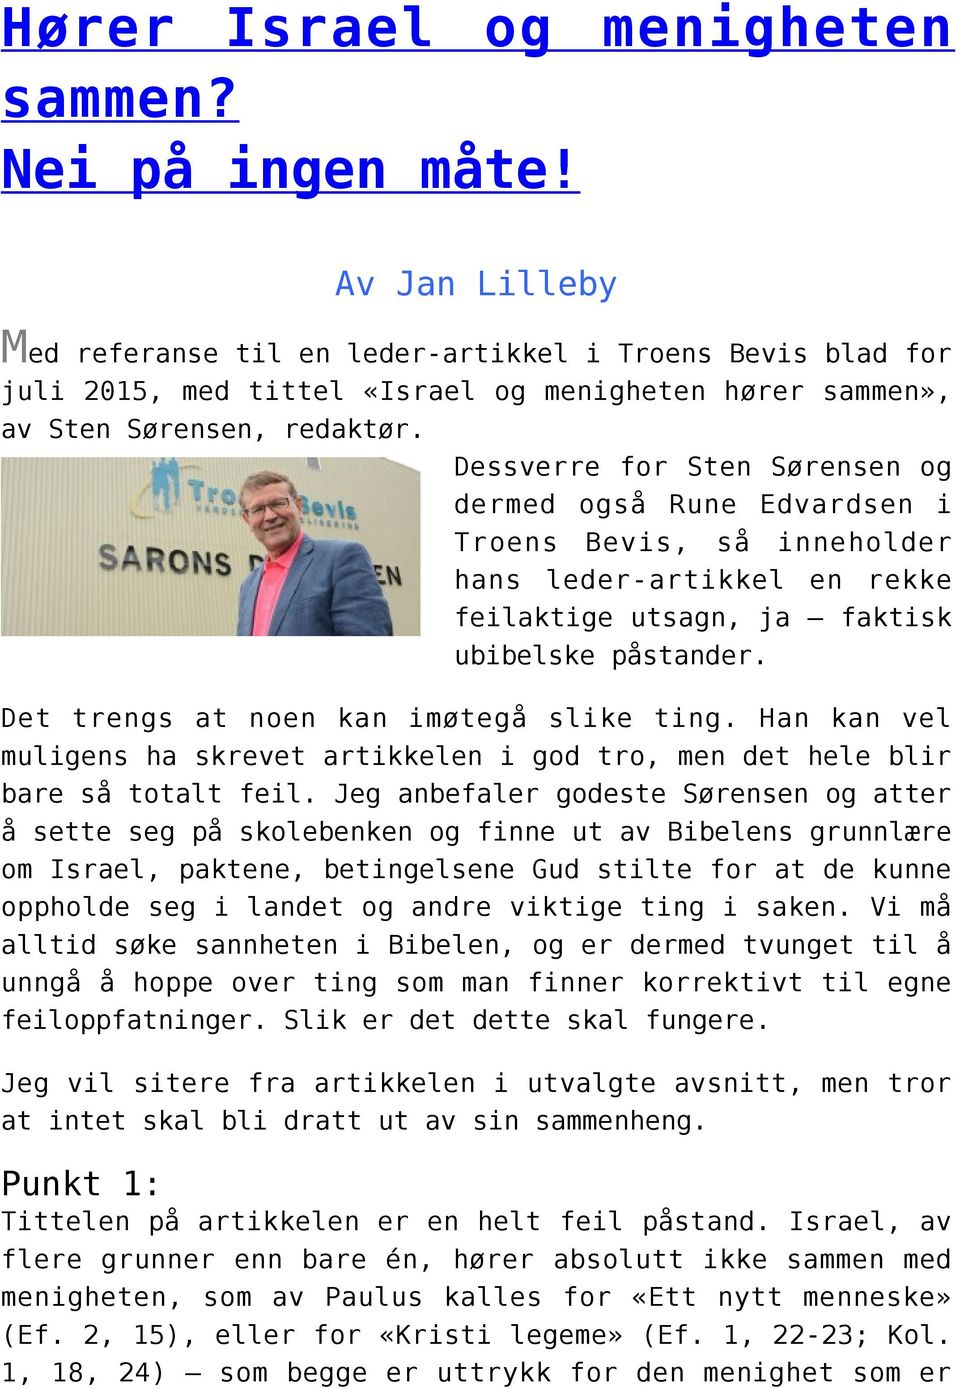 Dessverre for Sten Sørensen og dermed også Rune Edvardsen i Troens Bevis, så inneholder hans leder-artikkel en rekke feilaktige utsagn, ja faktisk ubibelske påstander.